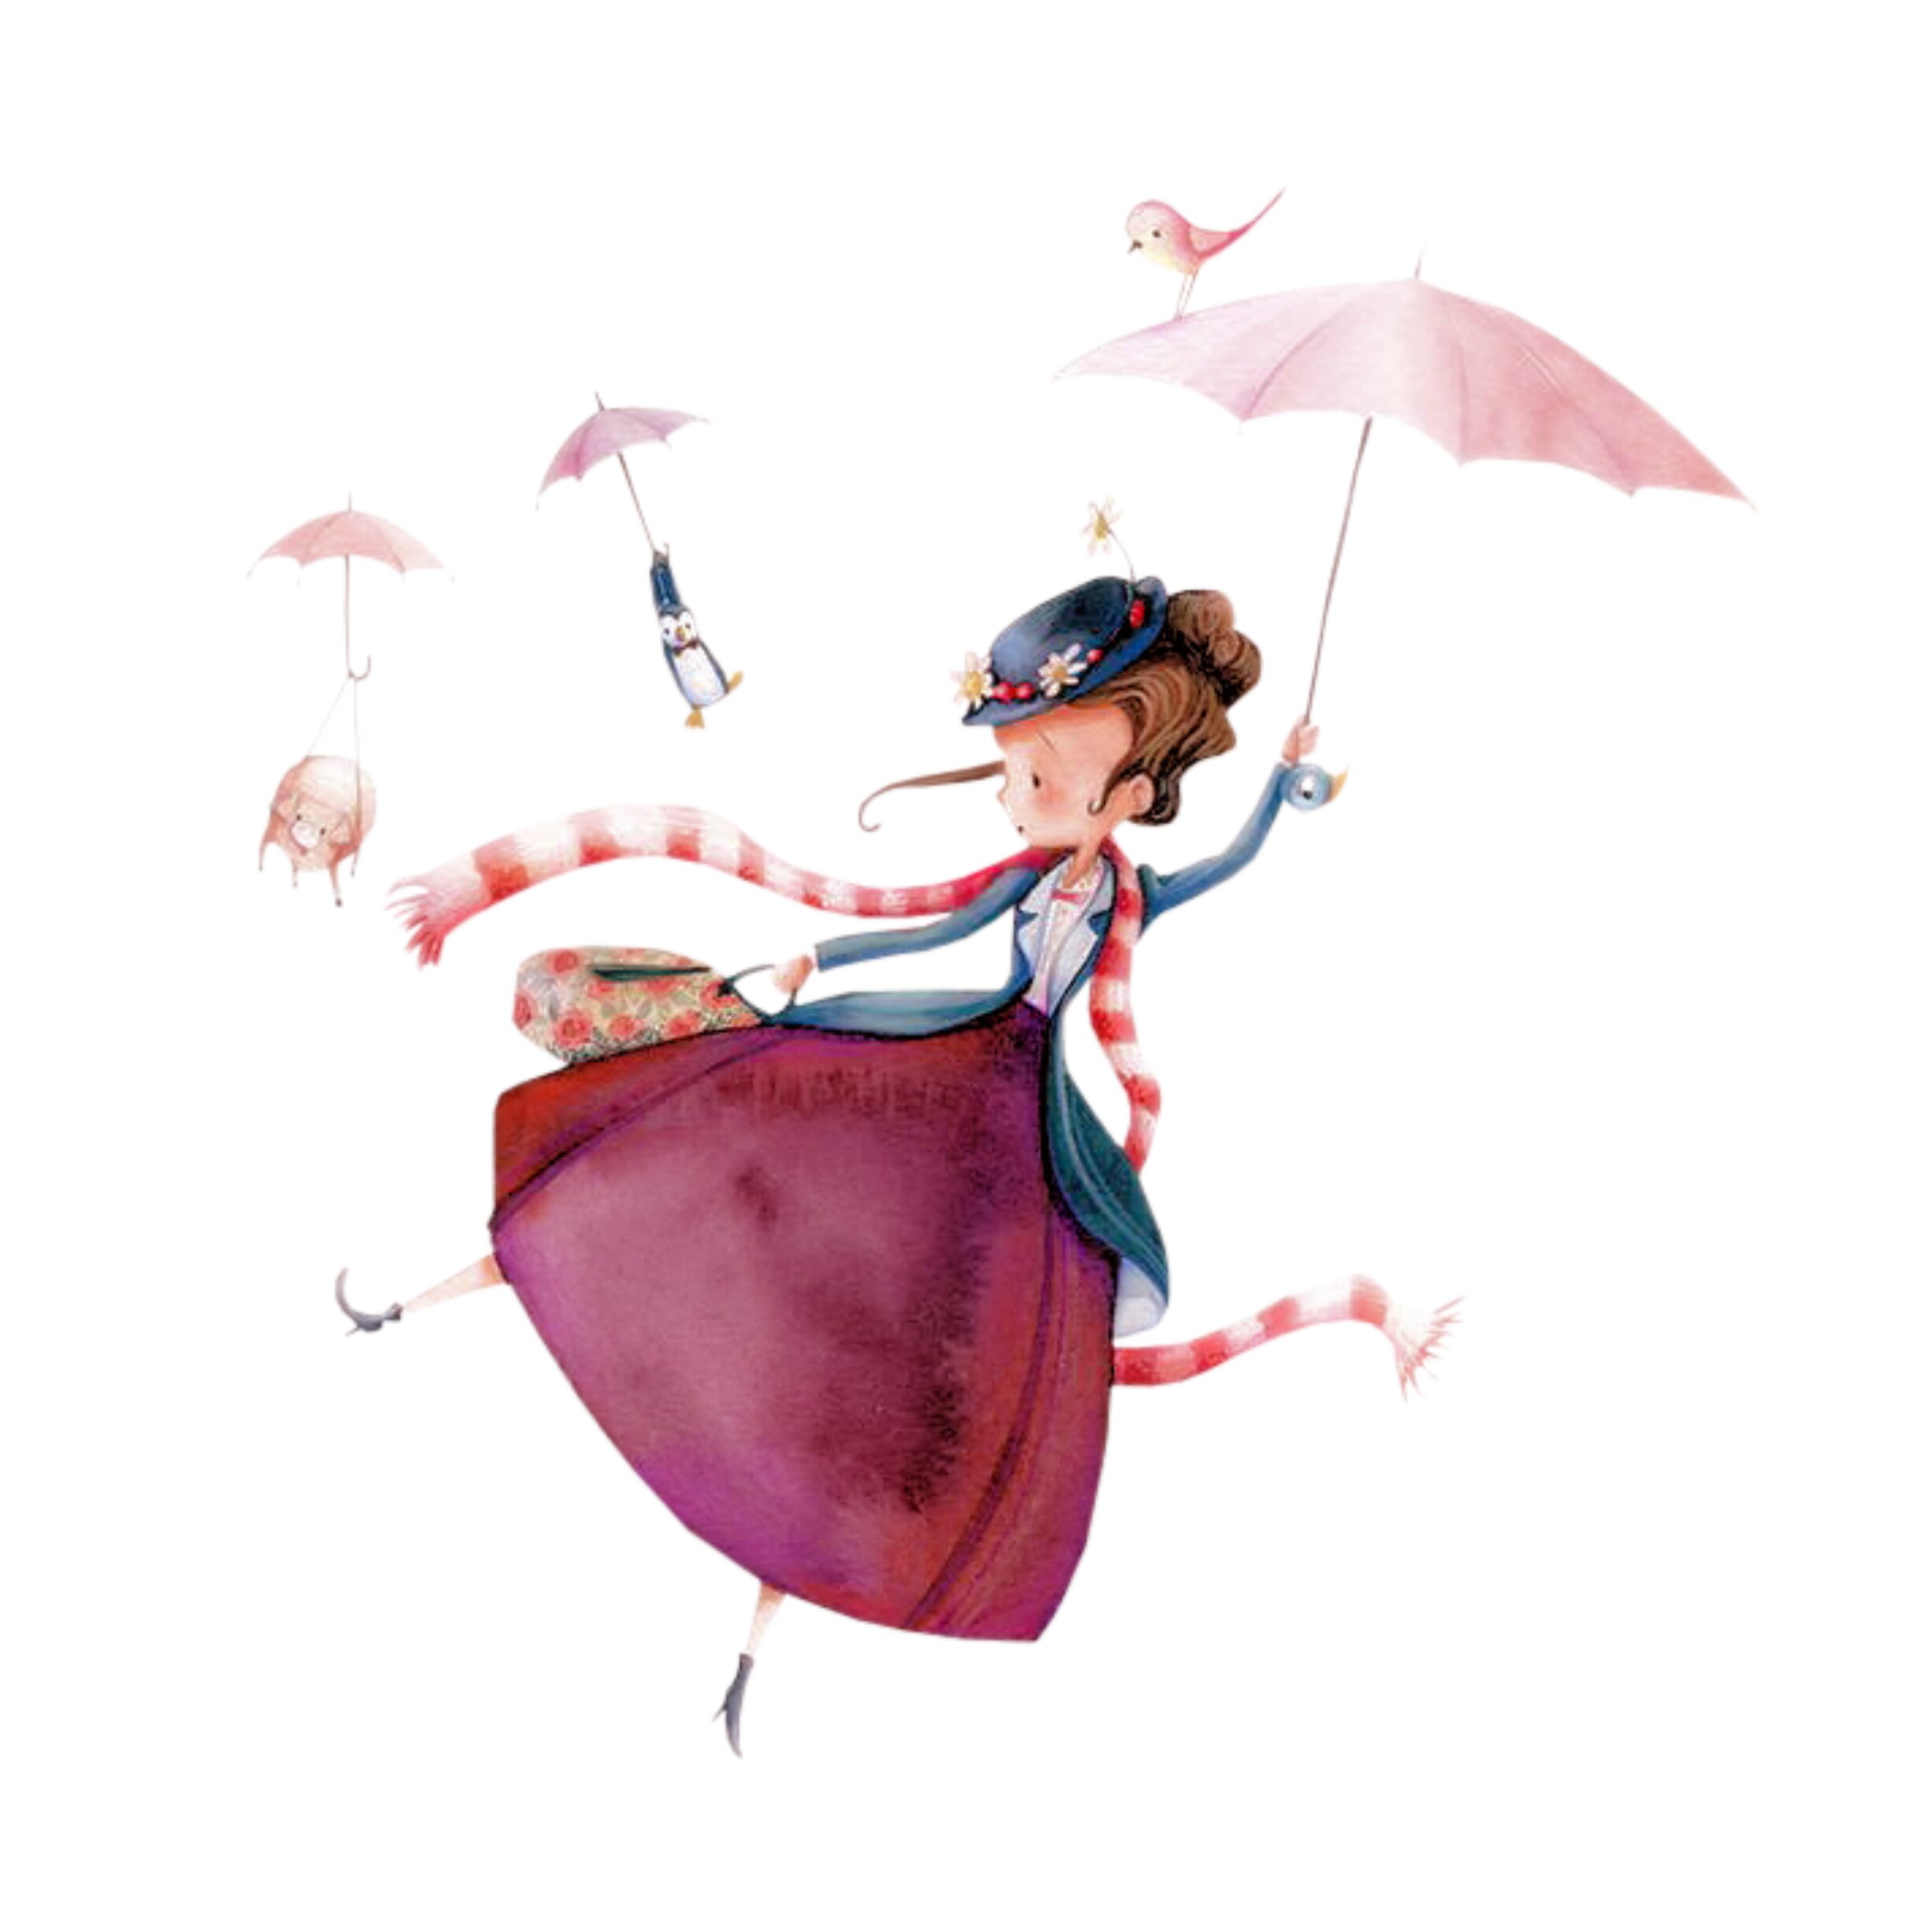 Мэри Поппинс летит на зонтике